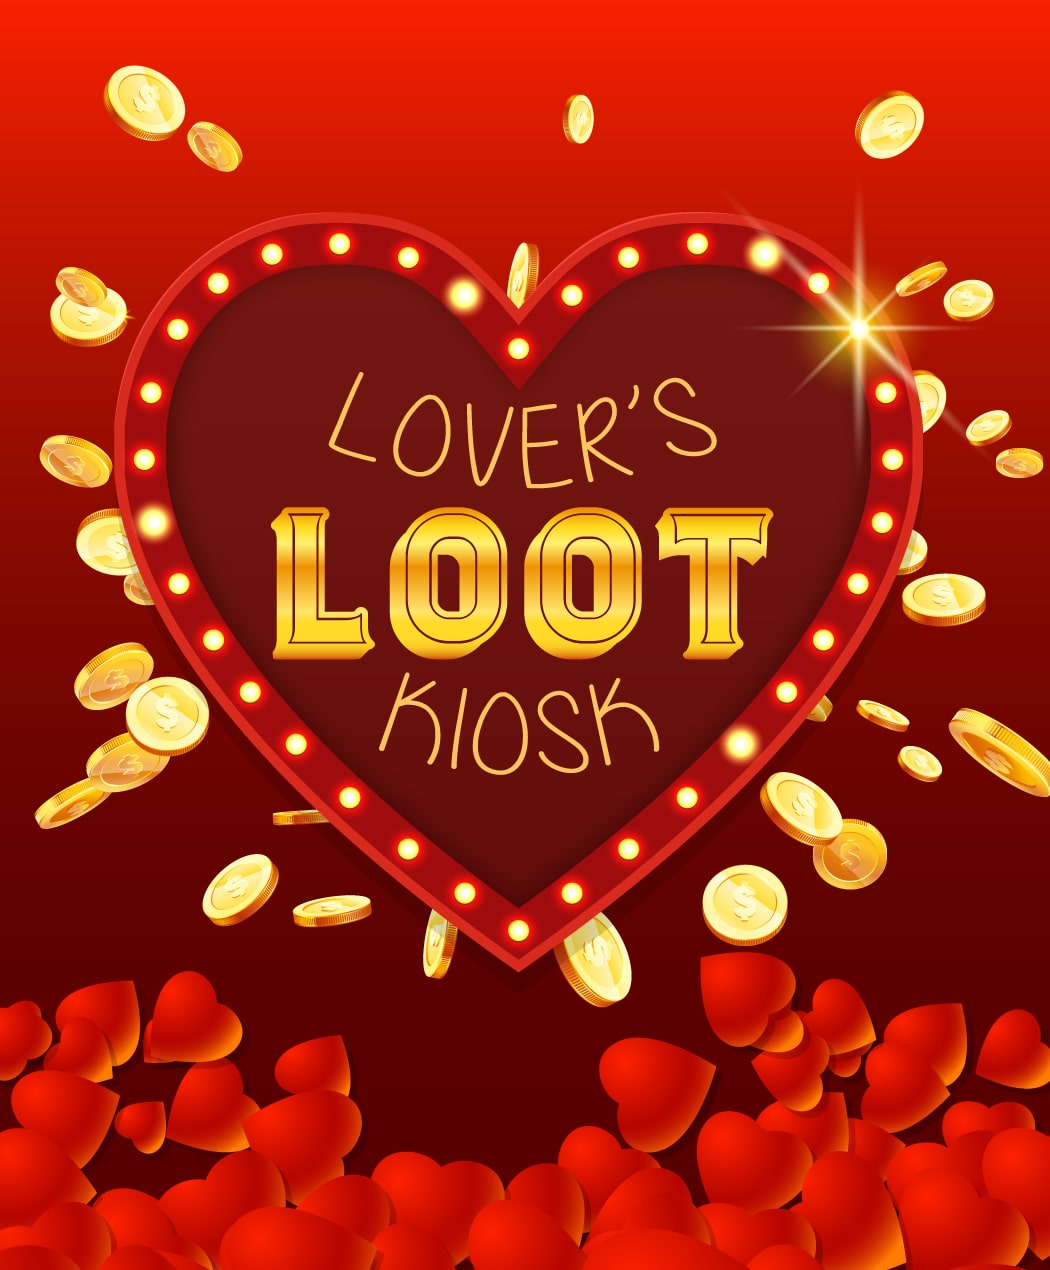 Lovers’ Loot Kiosk